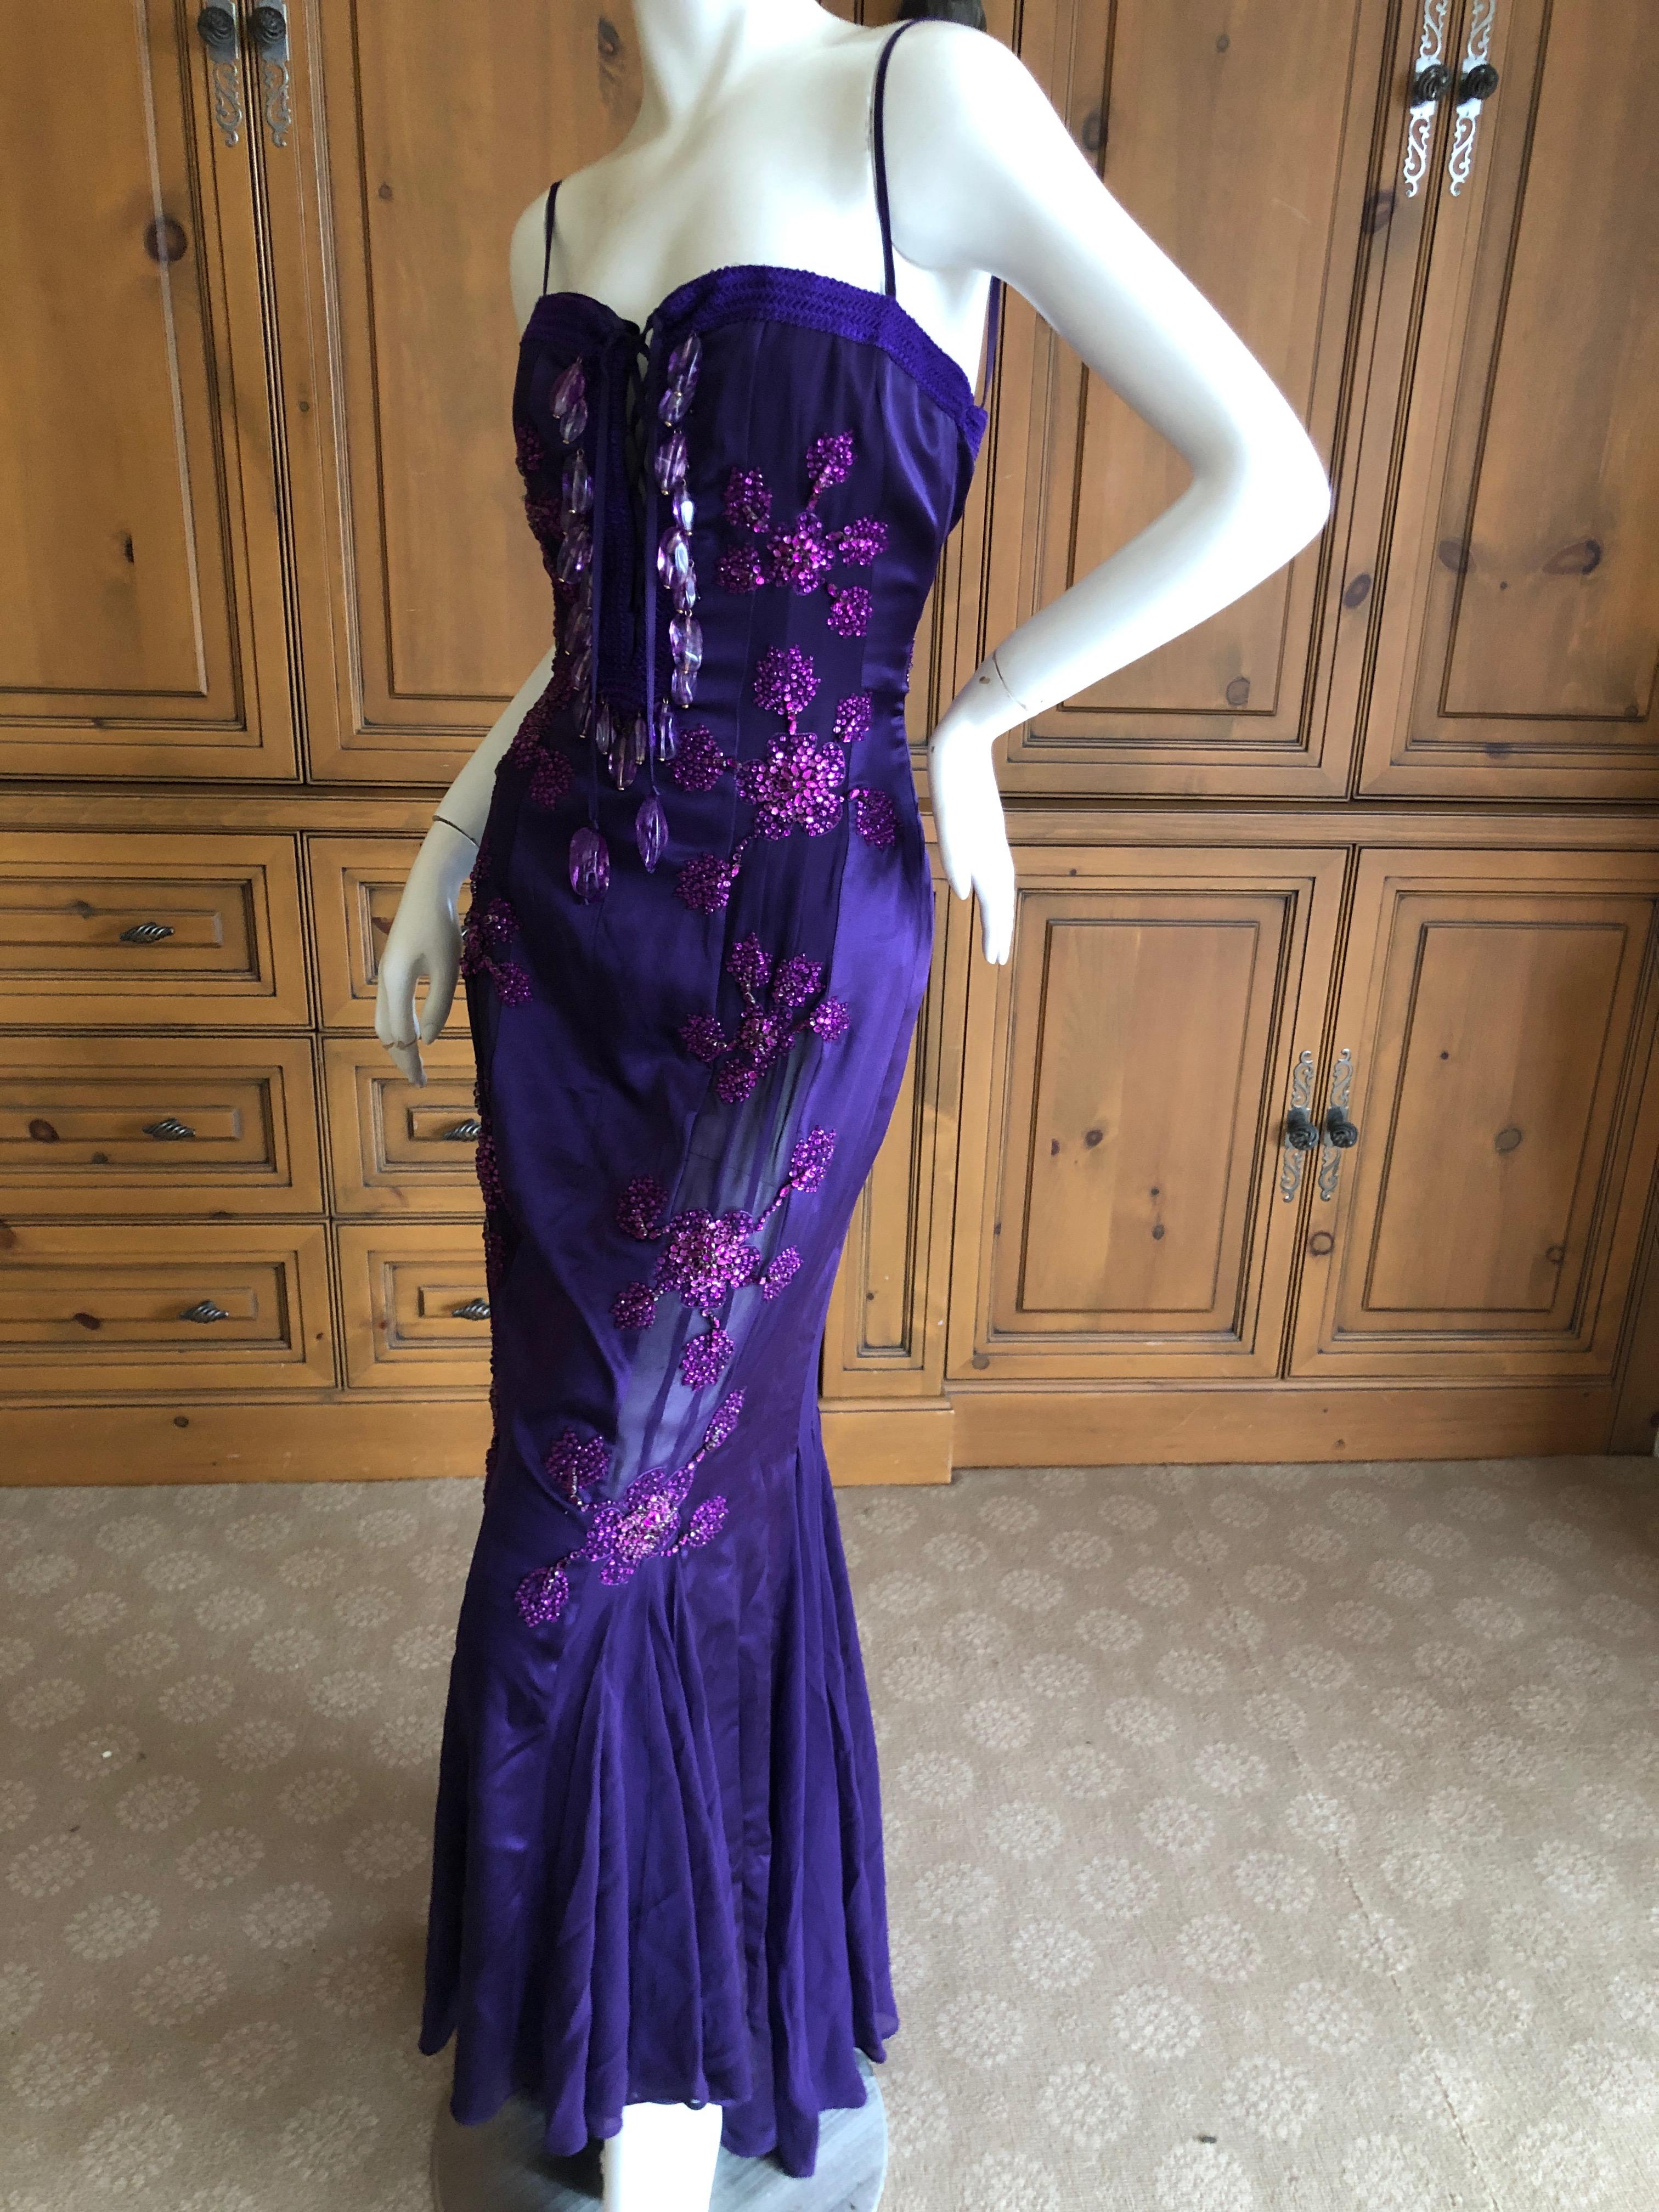 Emanuel Ungaro Amethyst Embellished Vintage Silk Evening Dress by Peter Dundas For Sale 3